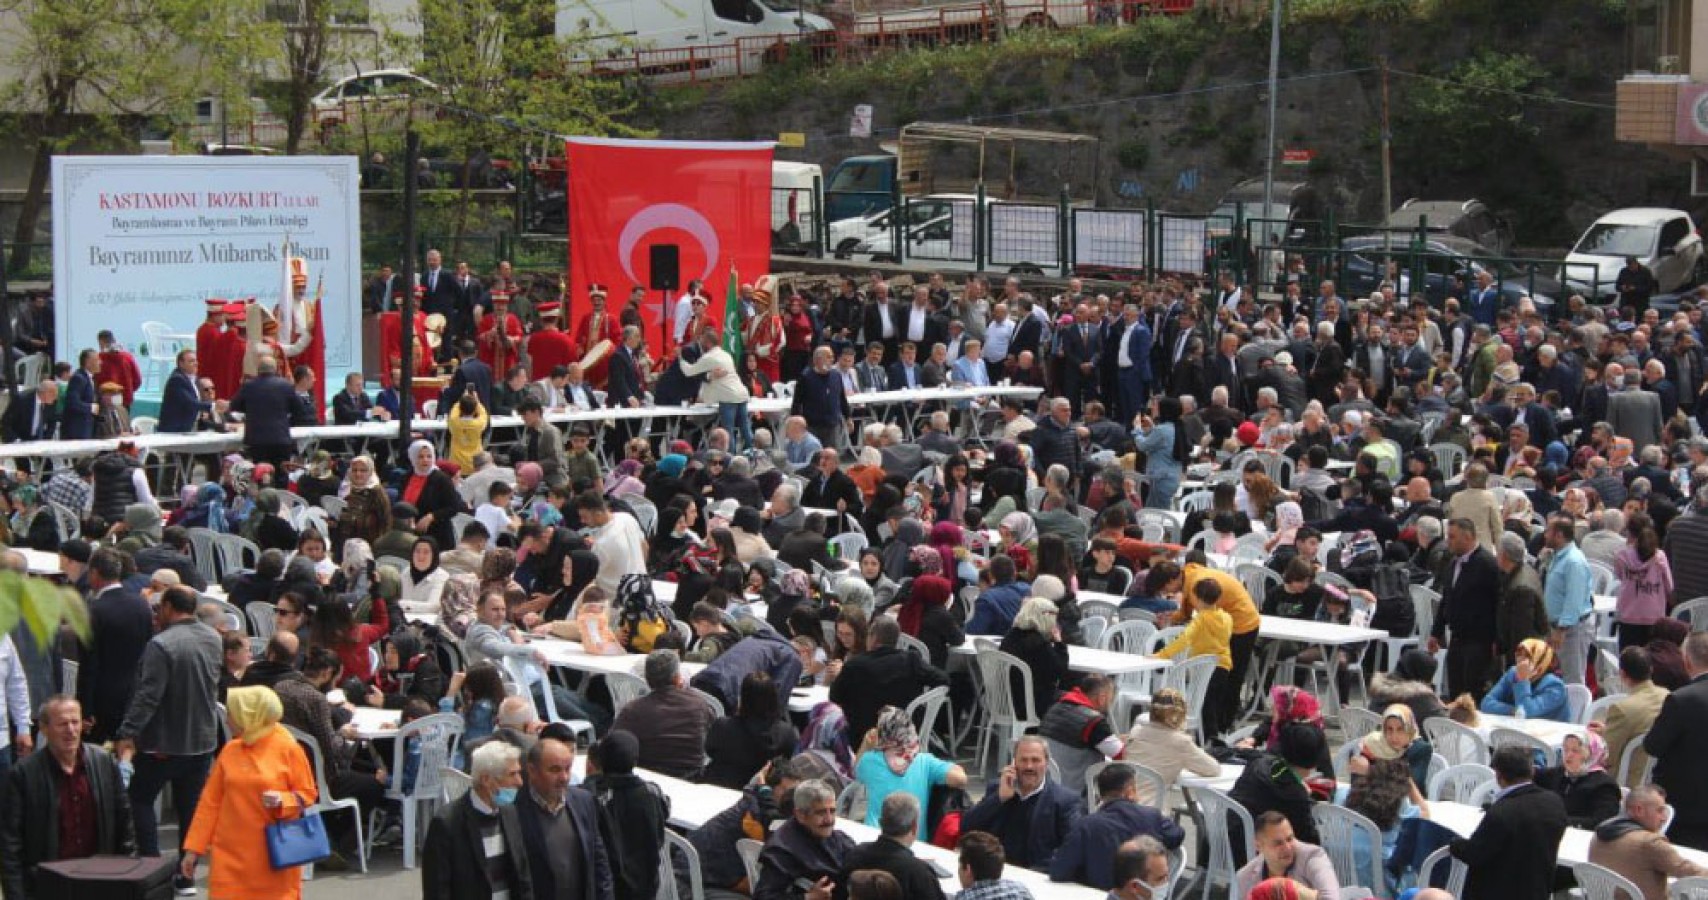 İstanbul'da 130 yıllık Kastamonu geleneği;